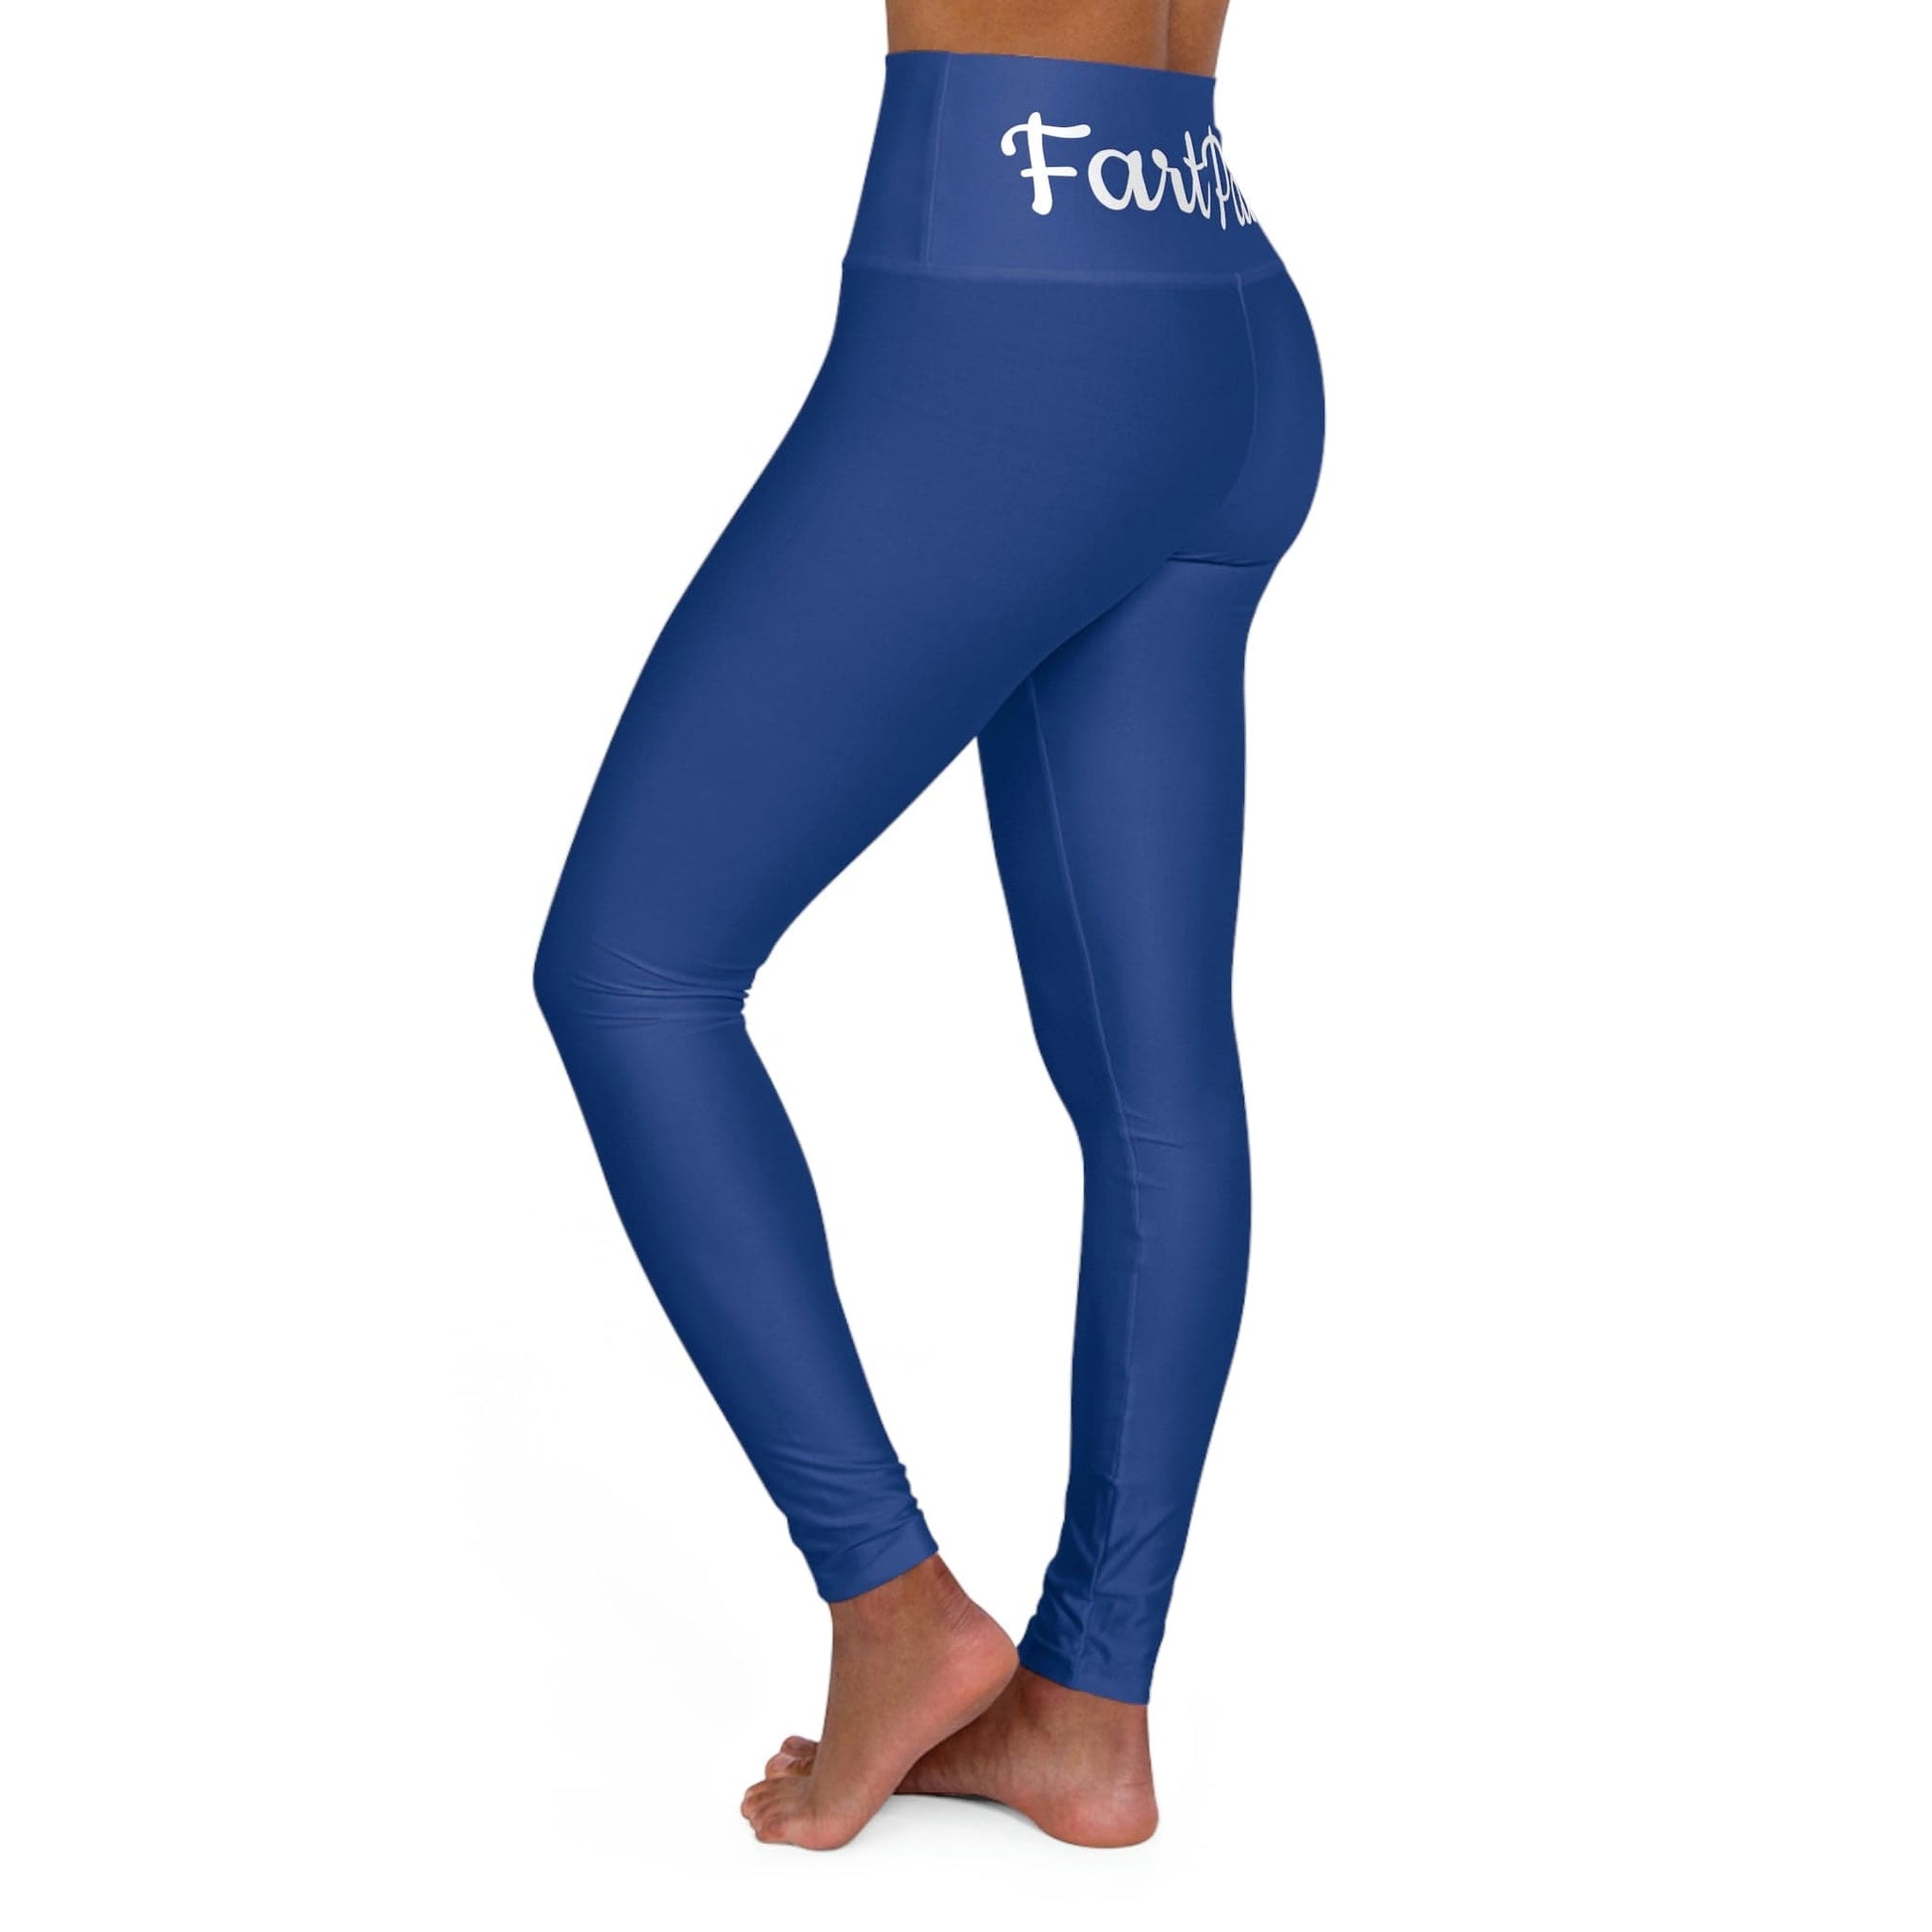 FartPants High Waisted Yoga Leggings - Blue Yoga Workout Pants - Comfo